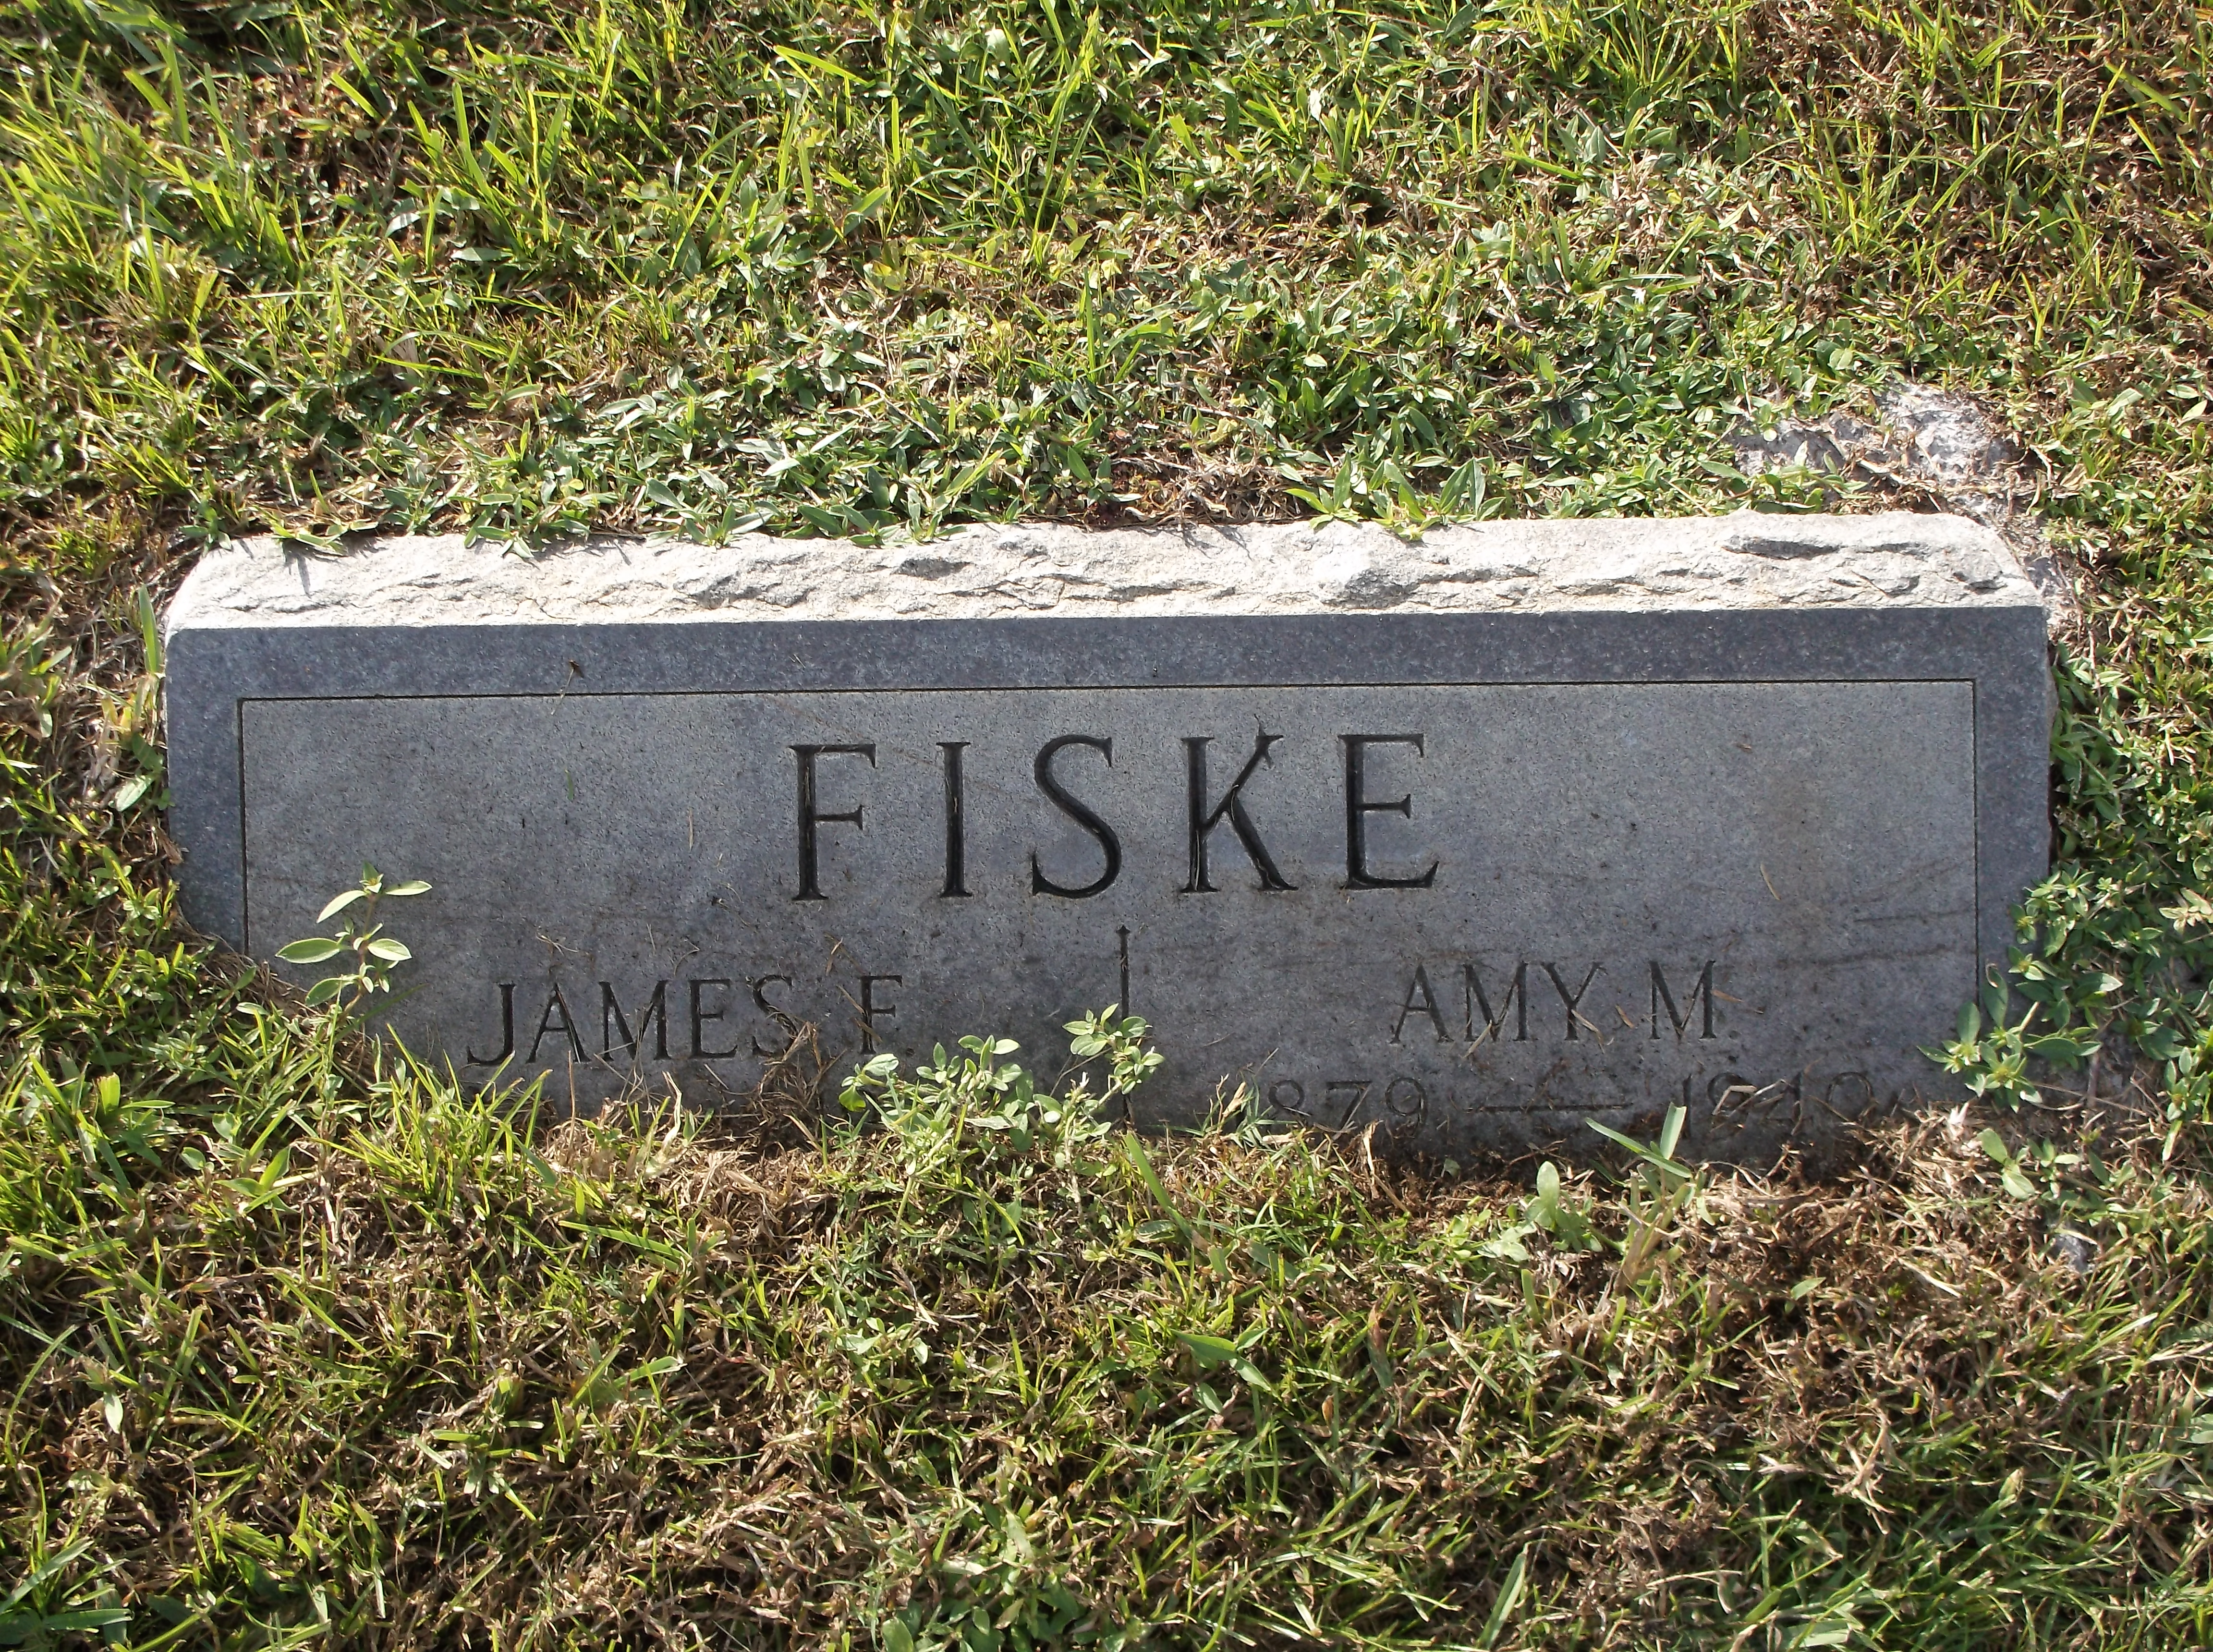 James F Fiske